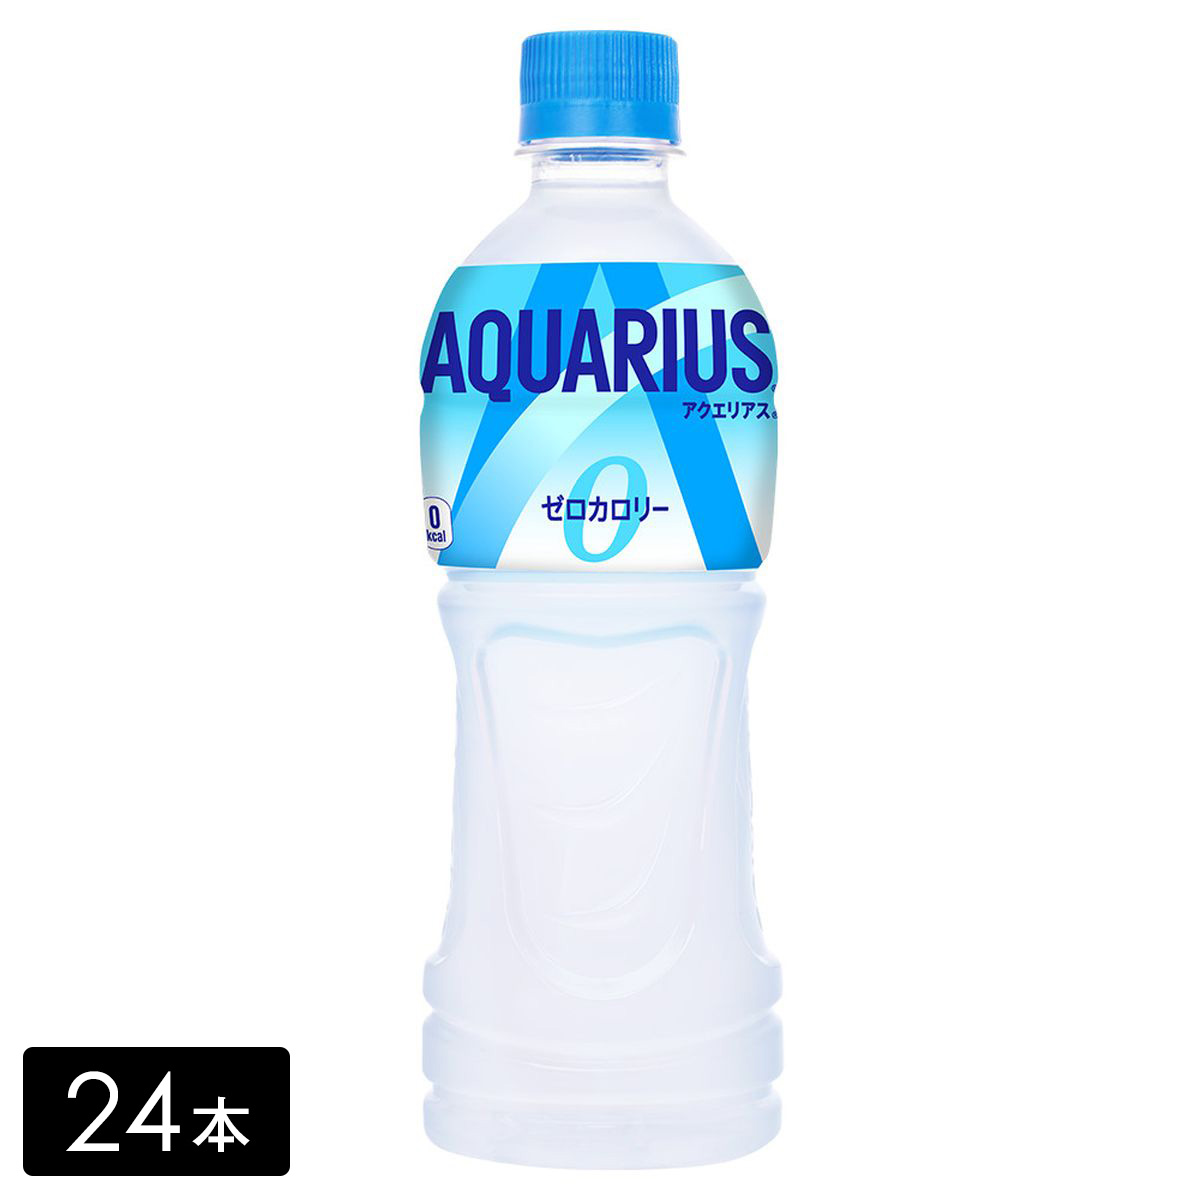 アクエリアス ゼロ スポーツドリンク 500mL×24本(1箱) カロリーゼロ 熱中症対策 水分補給 AQUARIUS ペットボトル ケース売り